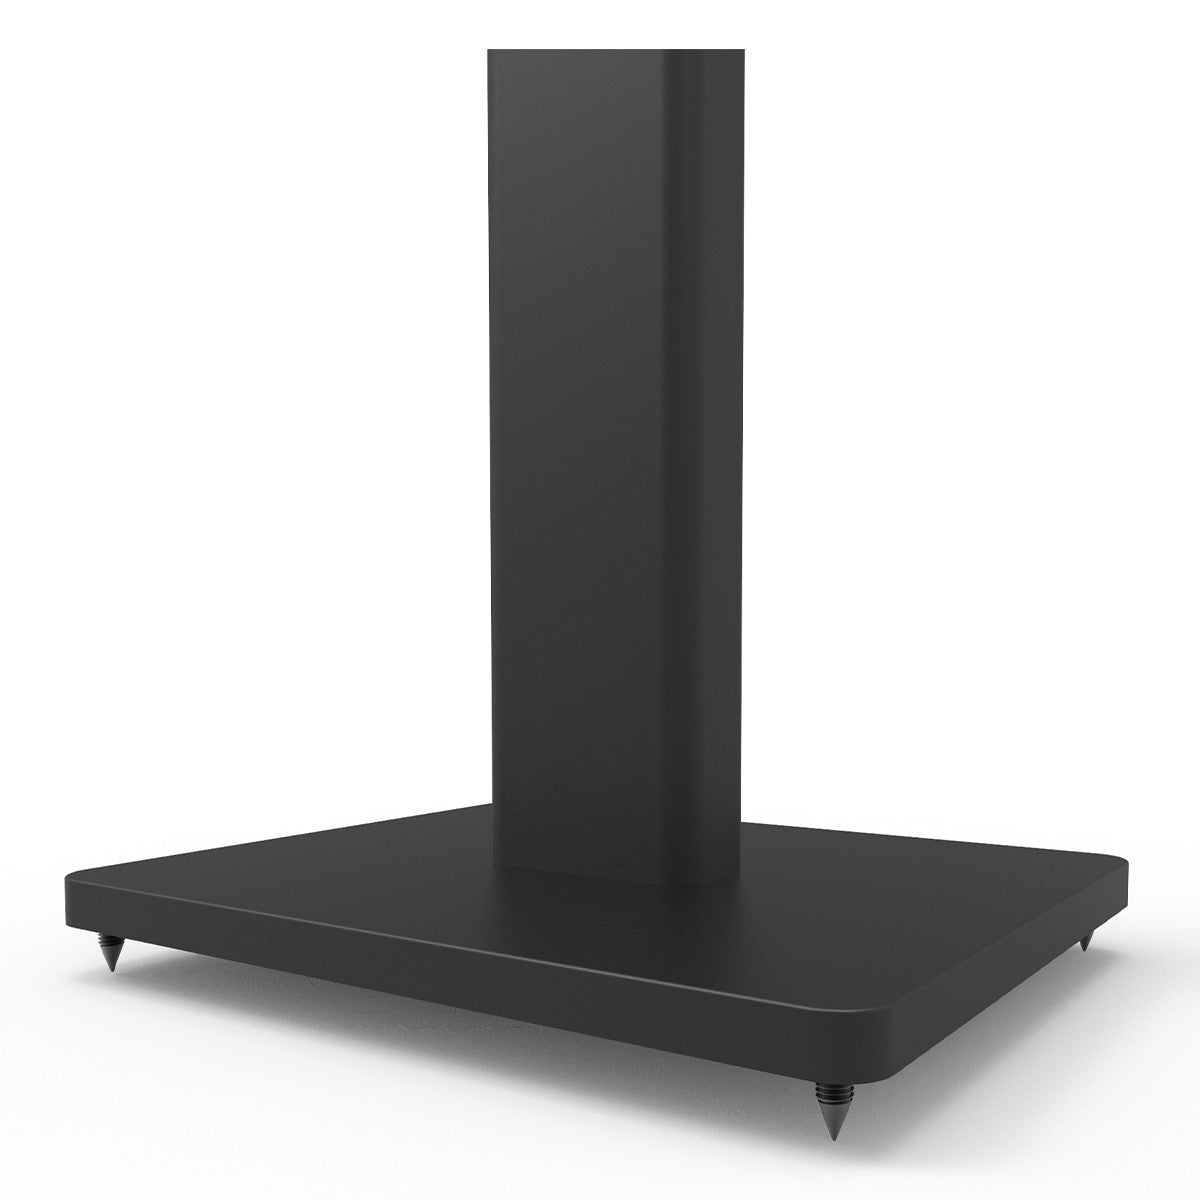 Kanto ST34 34" Universal Bookshelf Speaker Floor Stand - Black (Pair)